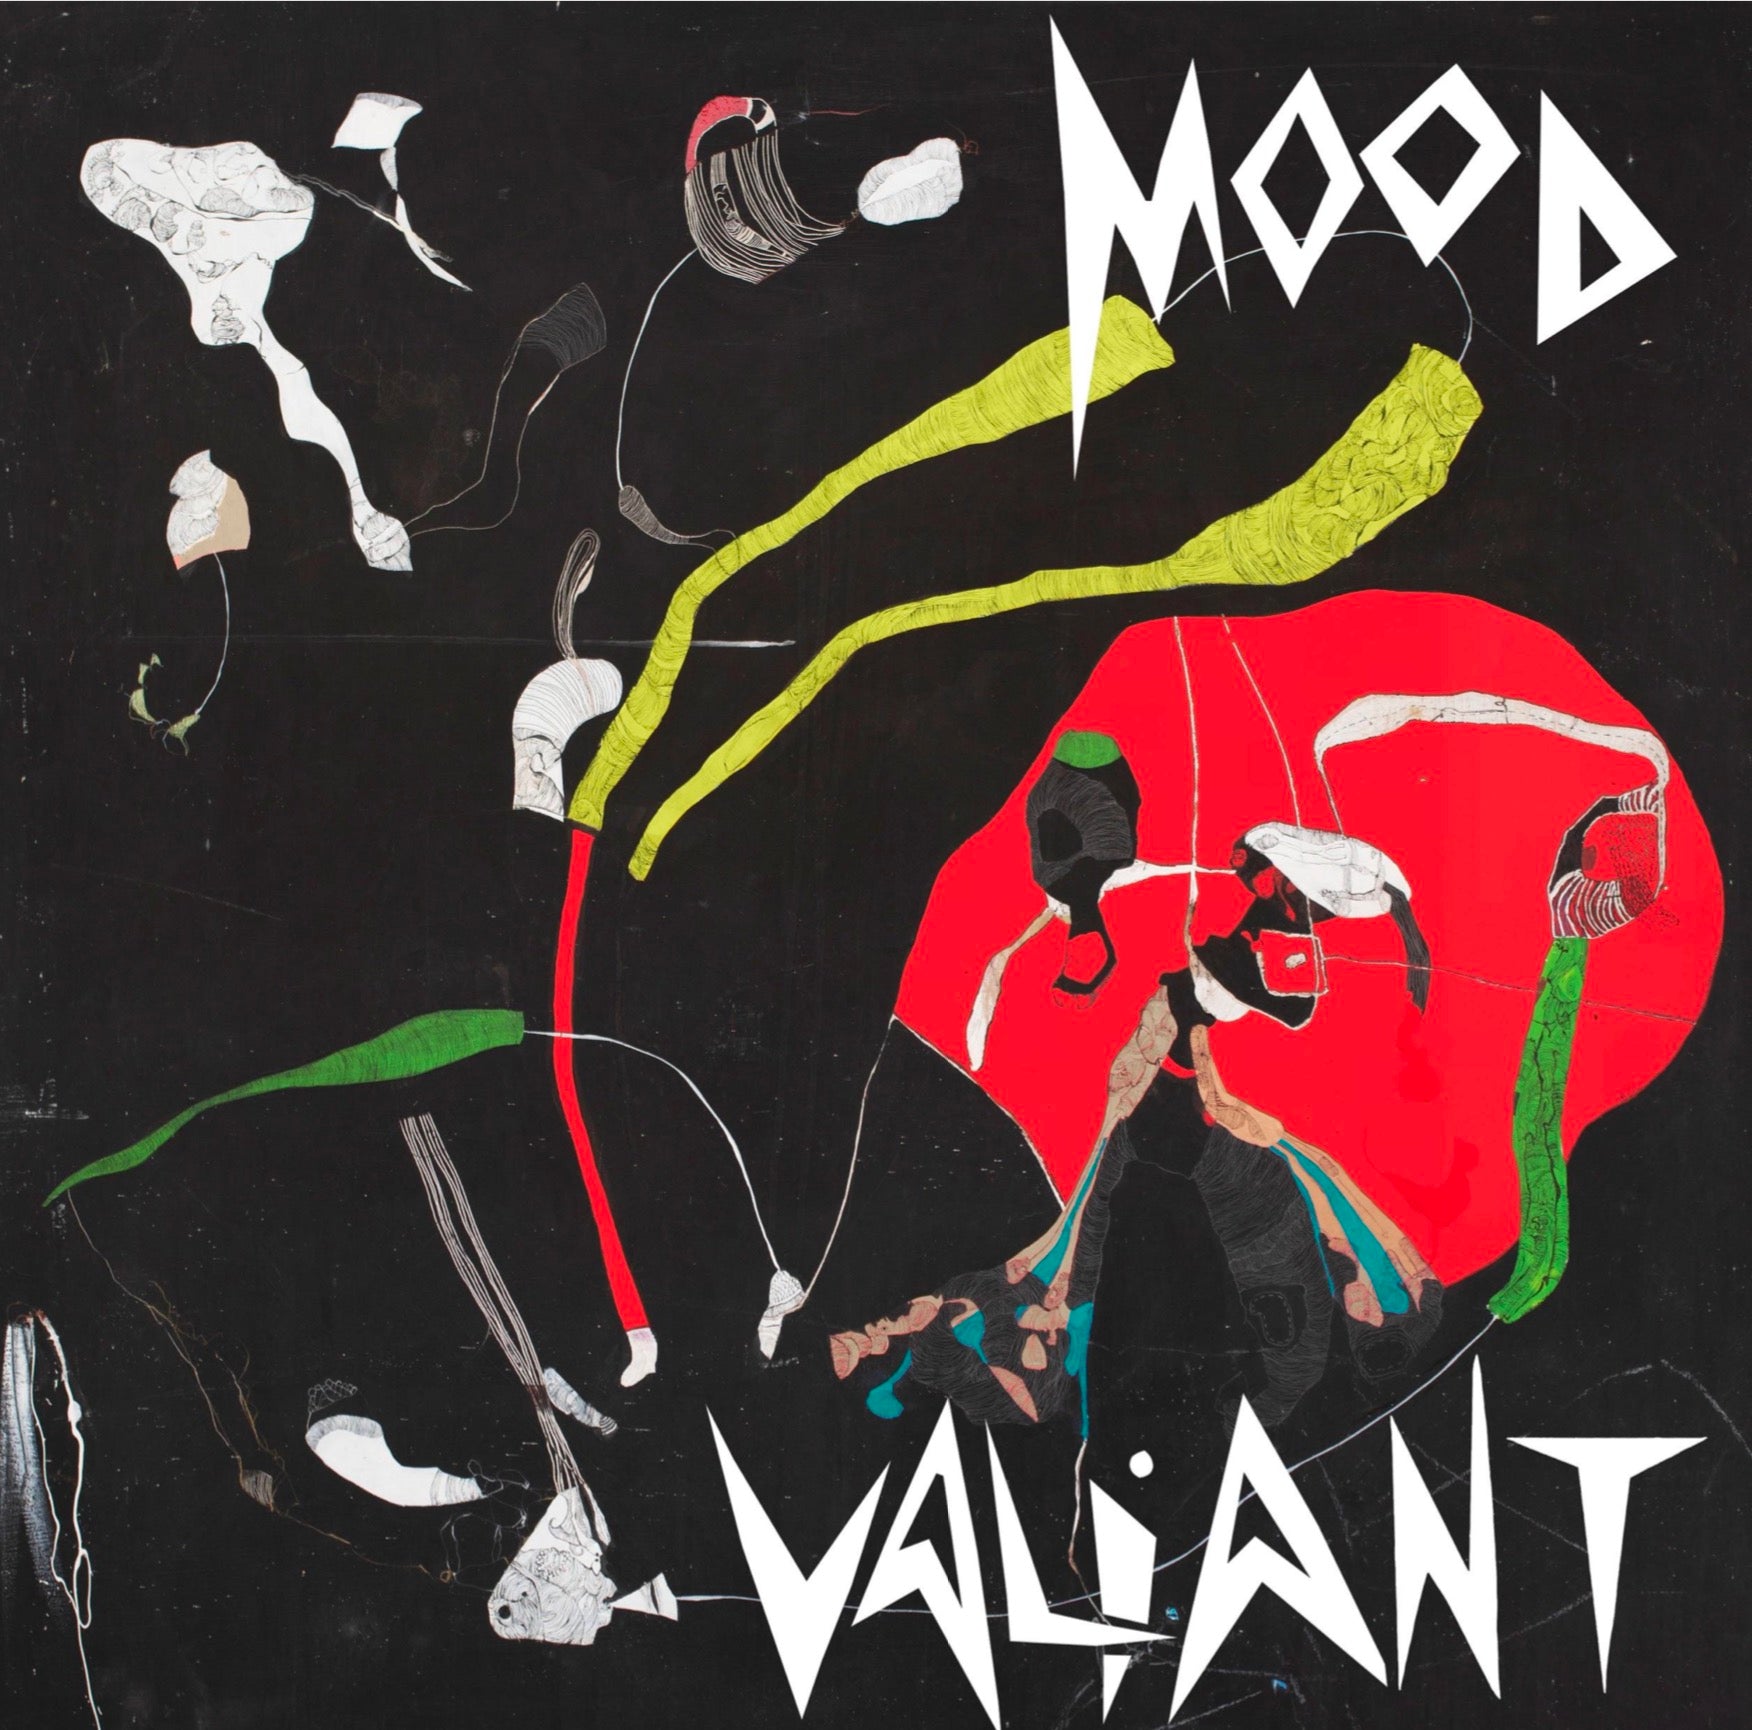 Hiatus Kaiyote - Mood Valiant [Indie-Exclusive Red & Black Vinyl]